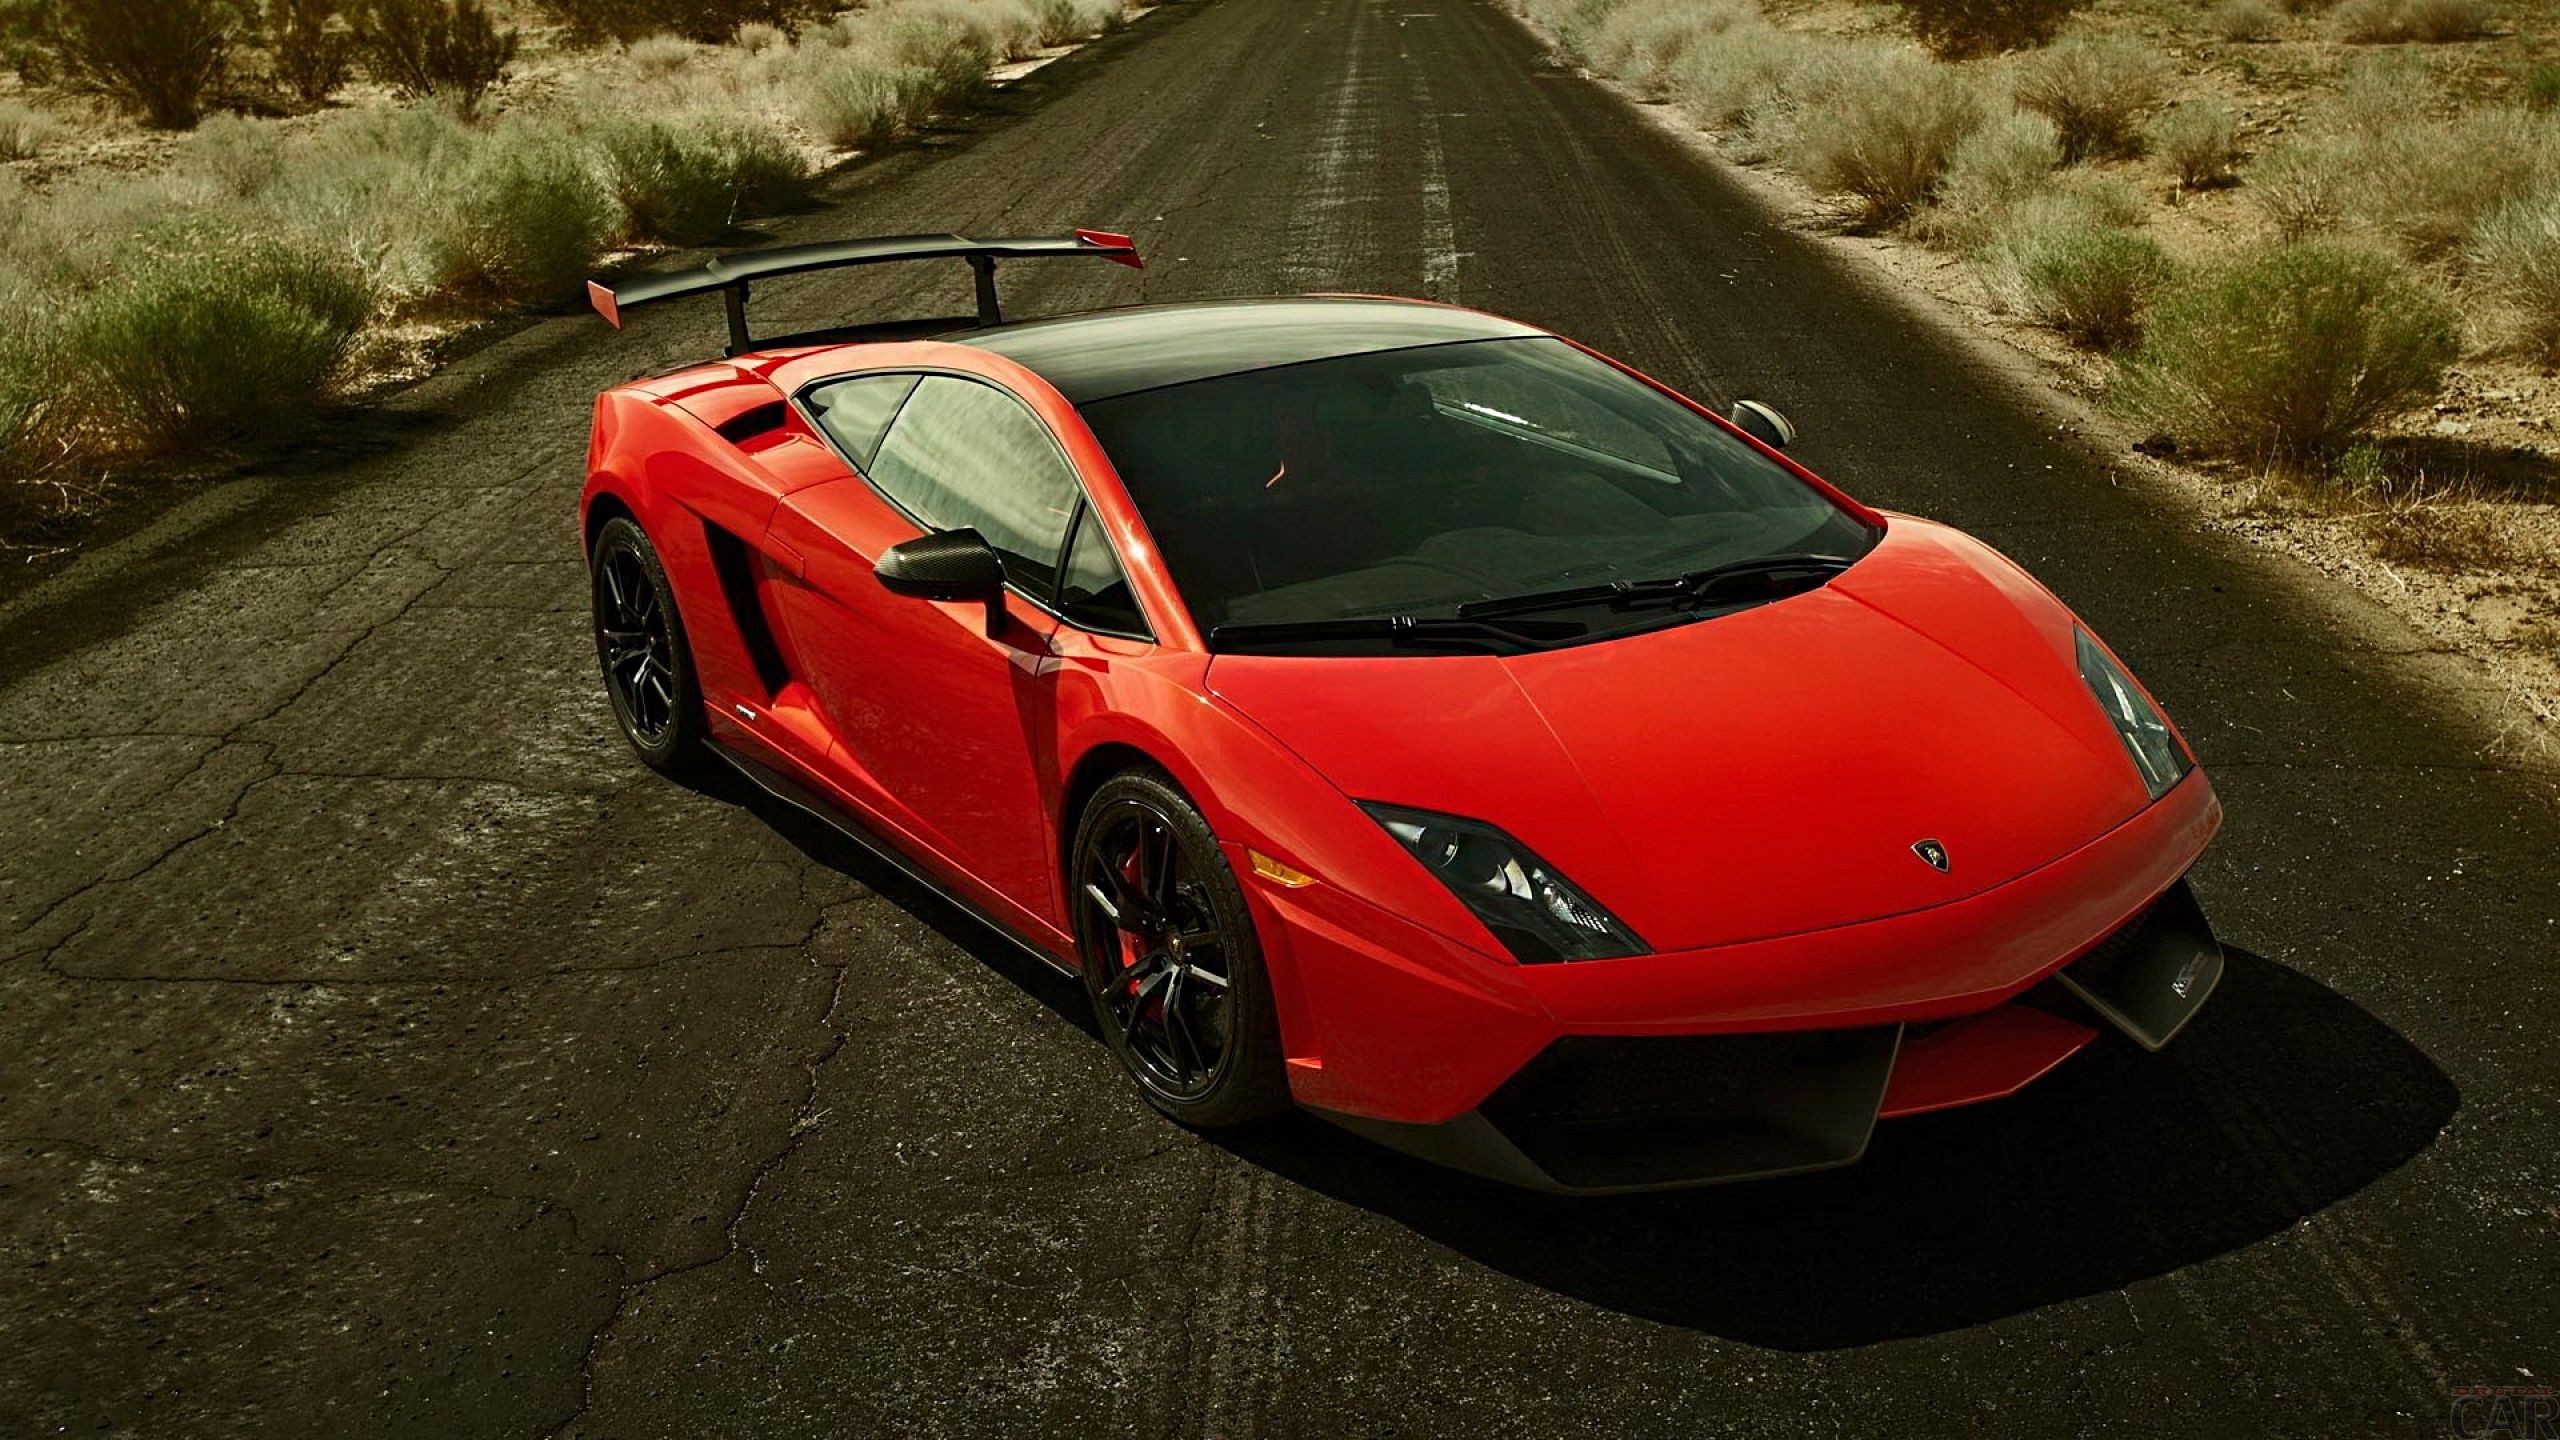 Foto auf Ihrem Desktop mit einem Deb\u00fct Budget leichten Supersportwagen Lamborghini Gallardo 